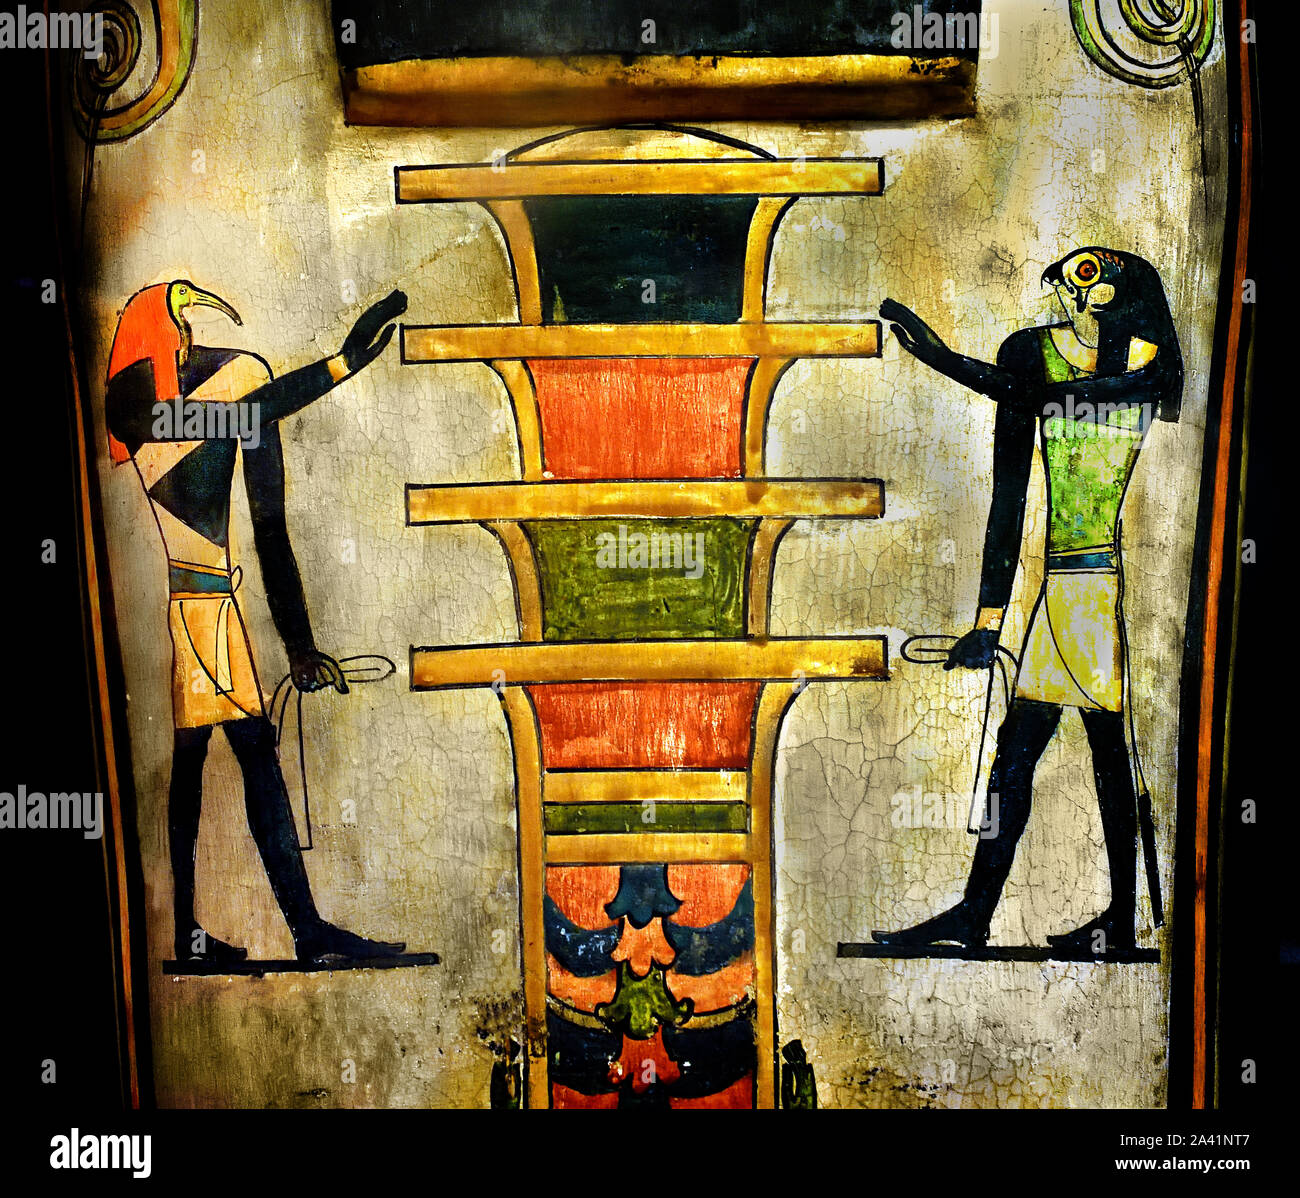 Cercueil de Imeneminet, troisième période intermédiaire, 1069 - 664 BC (tissu enduit et agglomérée ), l'Égypte, l'Égyptien. Banque D'Images